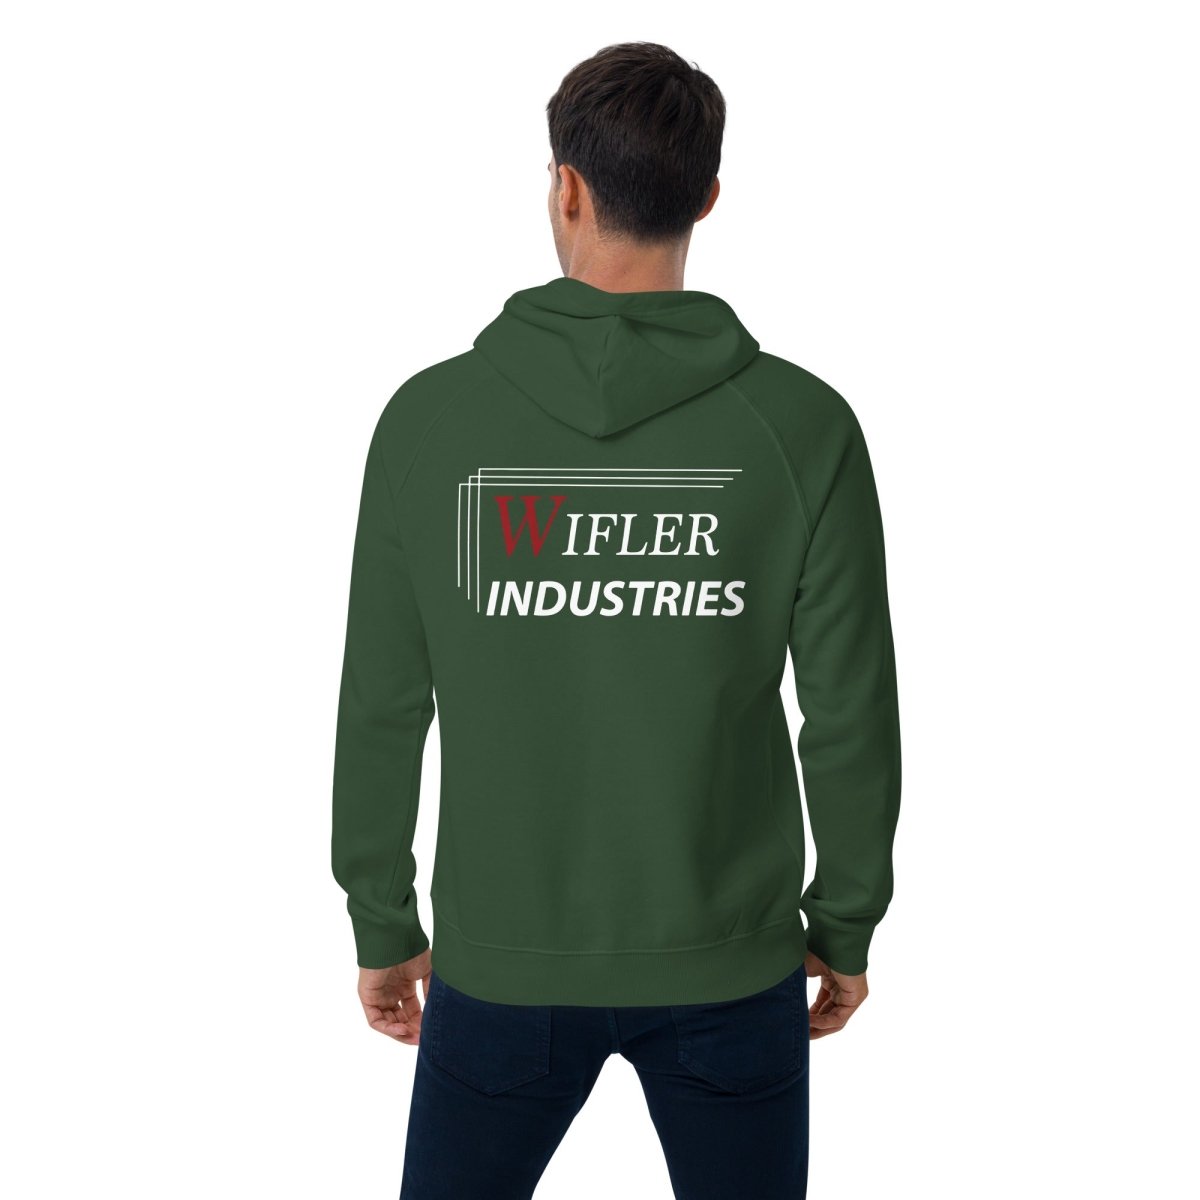 Unisex eco raglan hoodie - Wifler Industries--Wifler Industries-2185570_13737--Bottle green-XS--Unisex eco raglan hoodie-